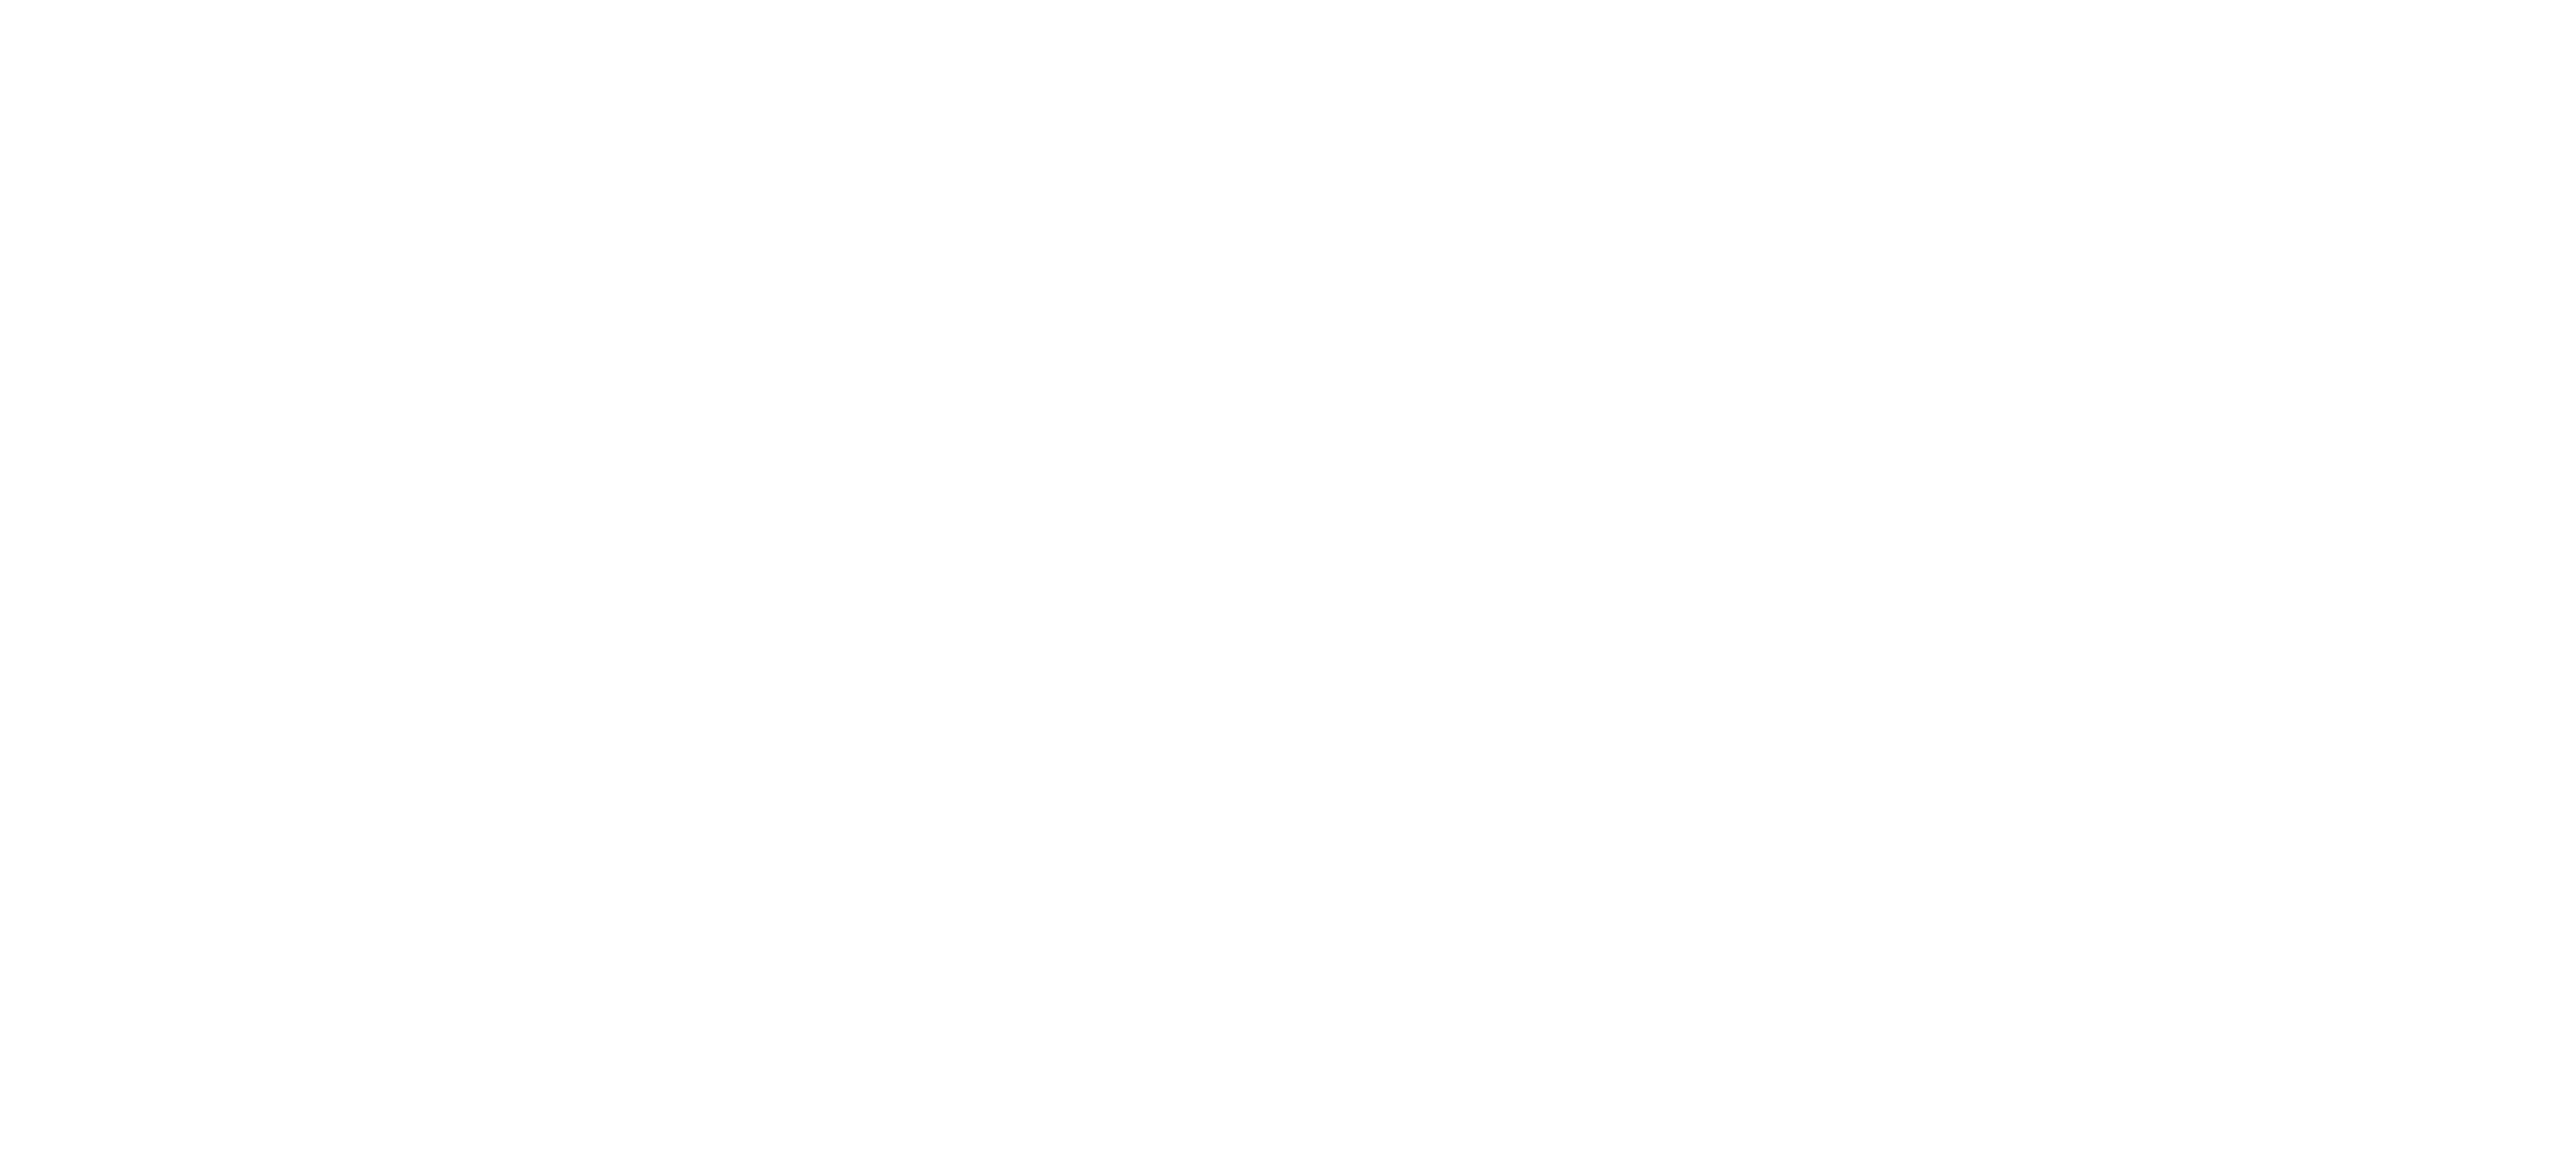 vimagineo_logo